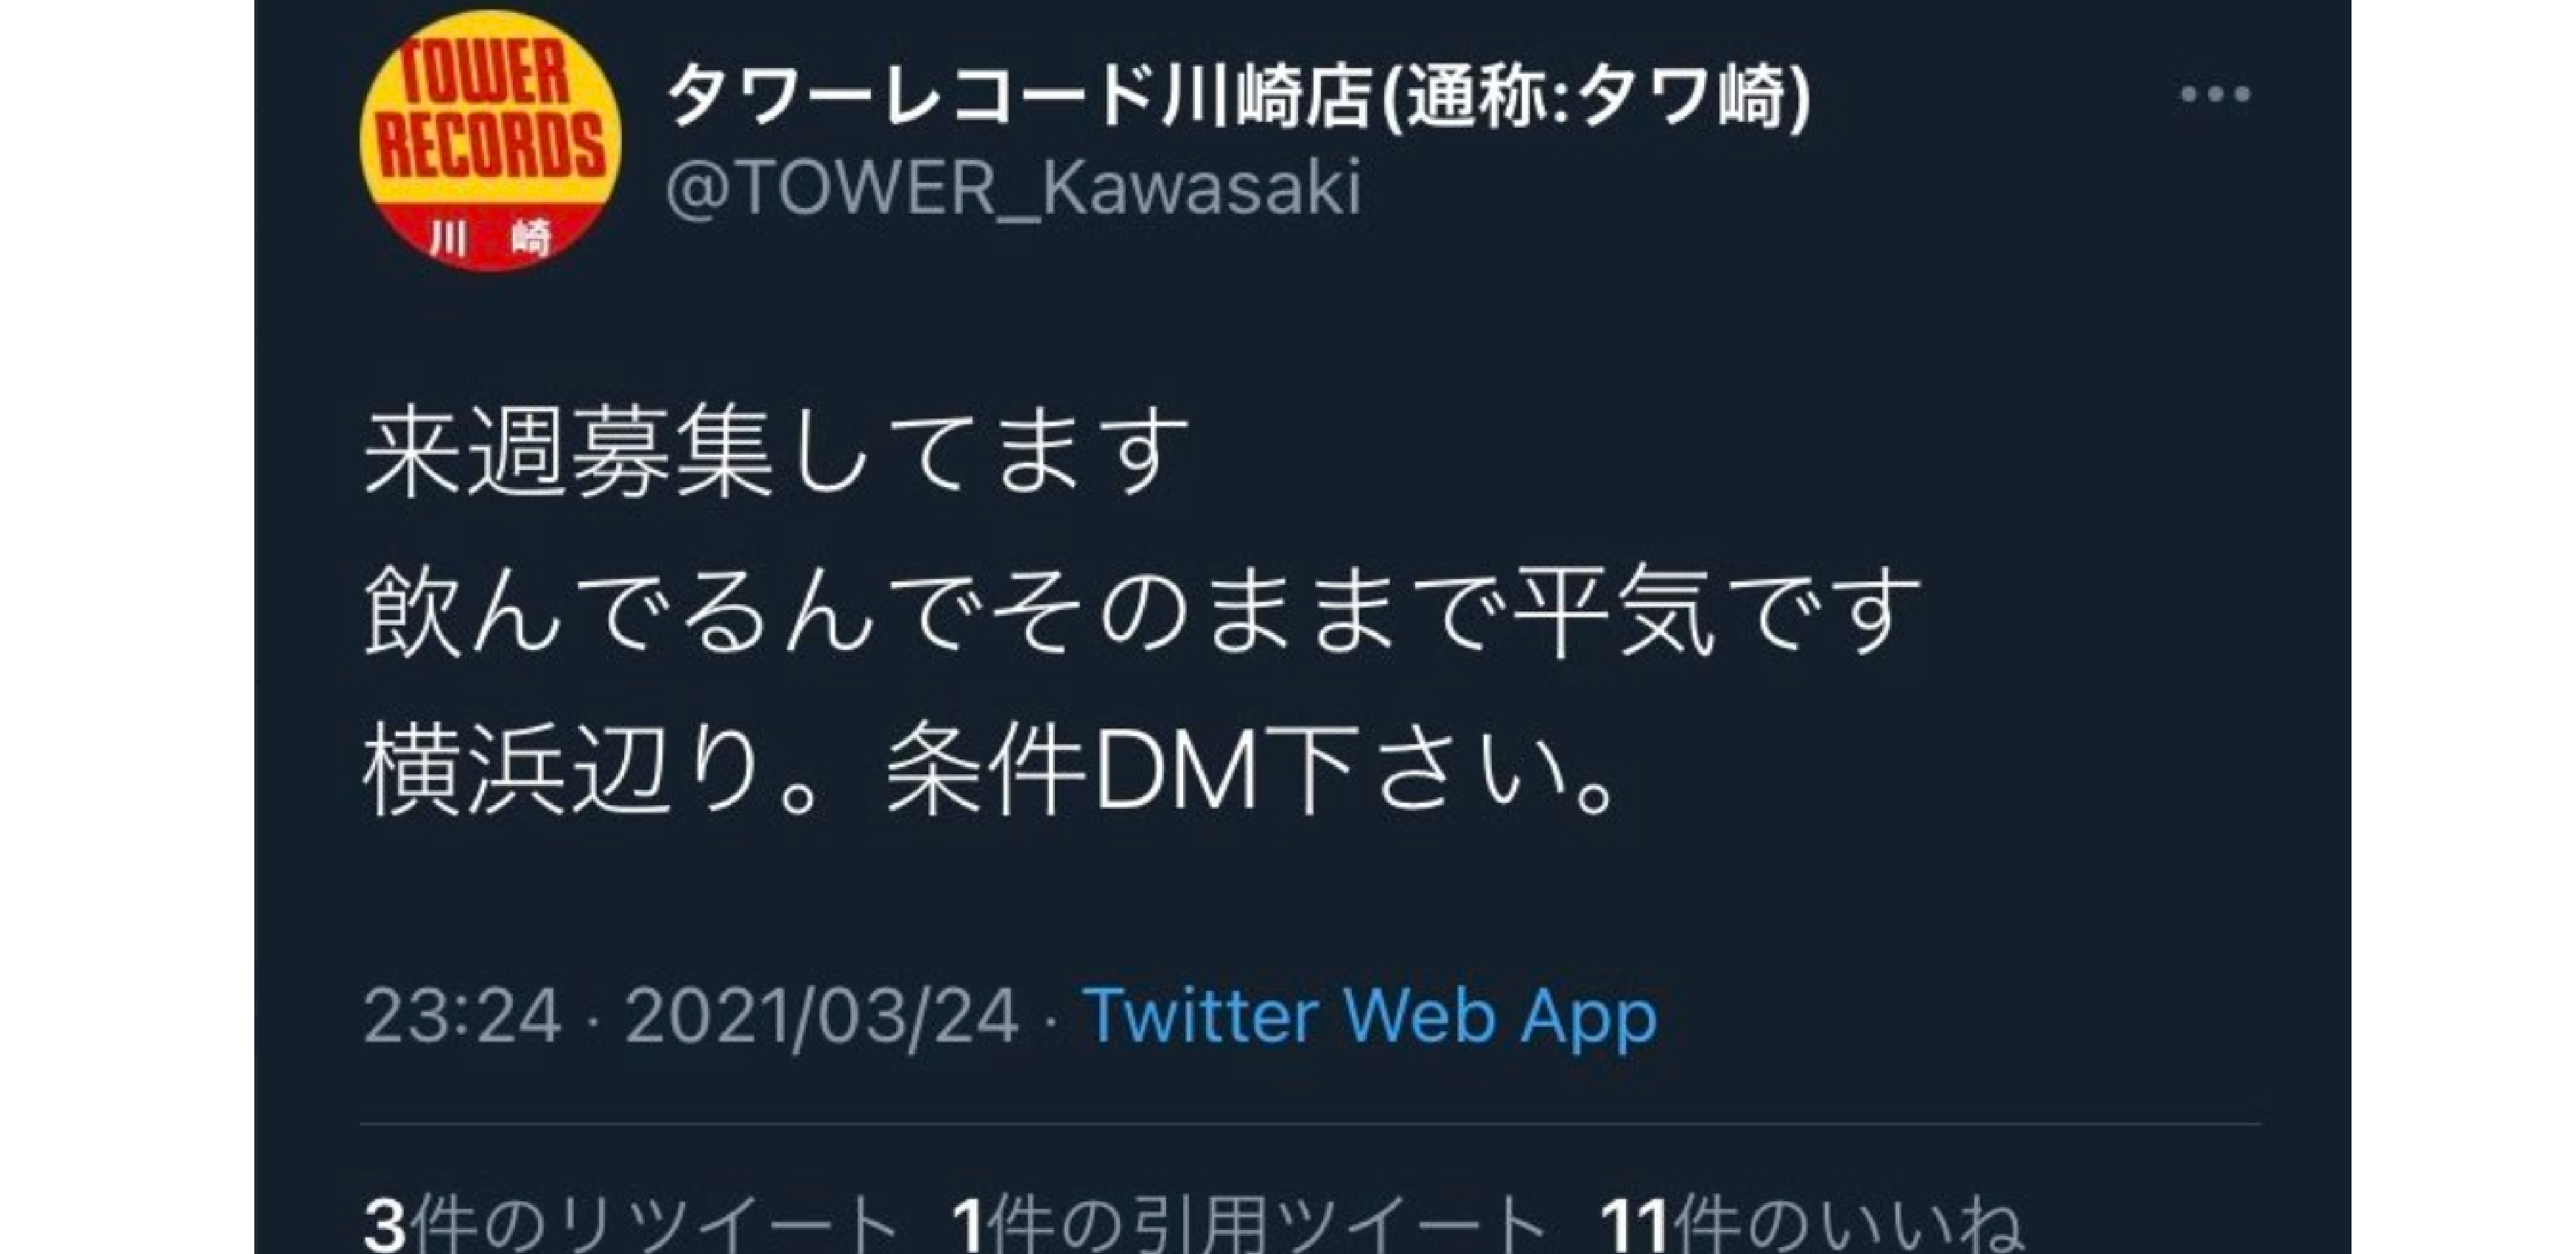 タワーレコード川崎店の「援助交際募集」ツイート「乗っ取りだった」と明言できない理由